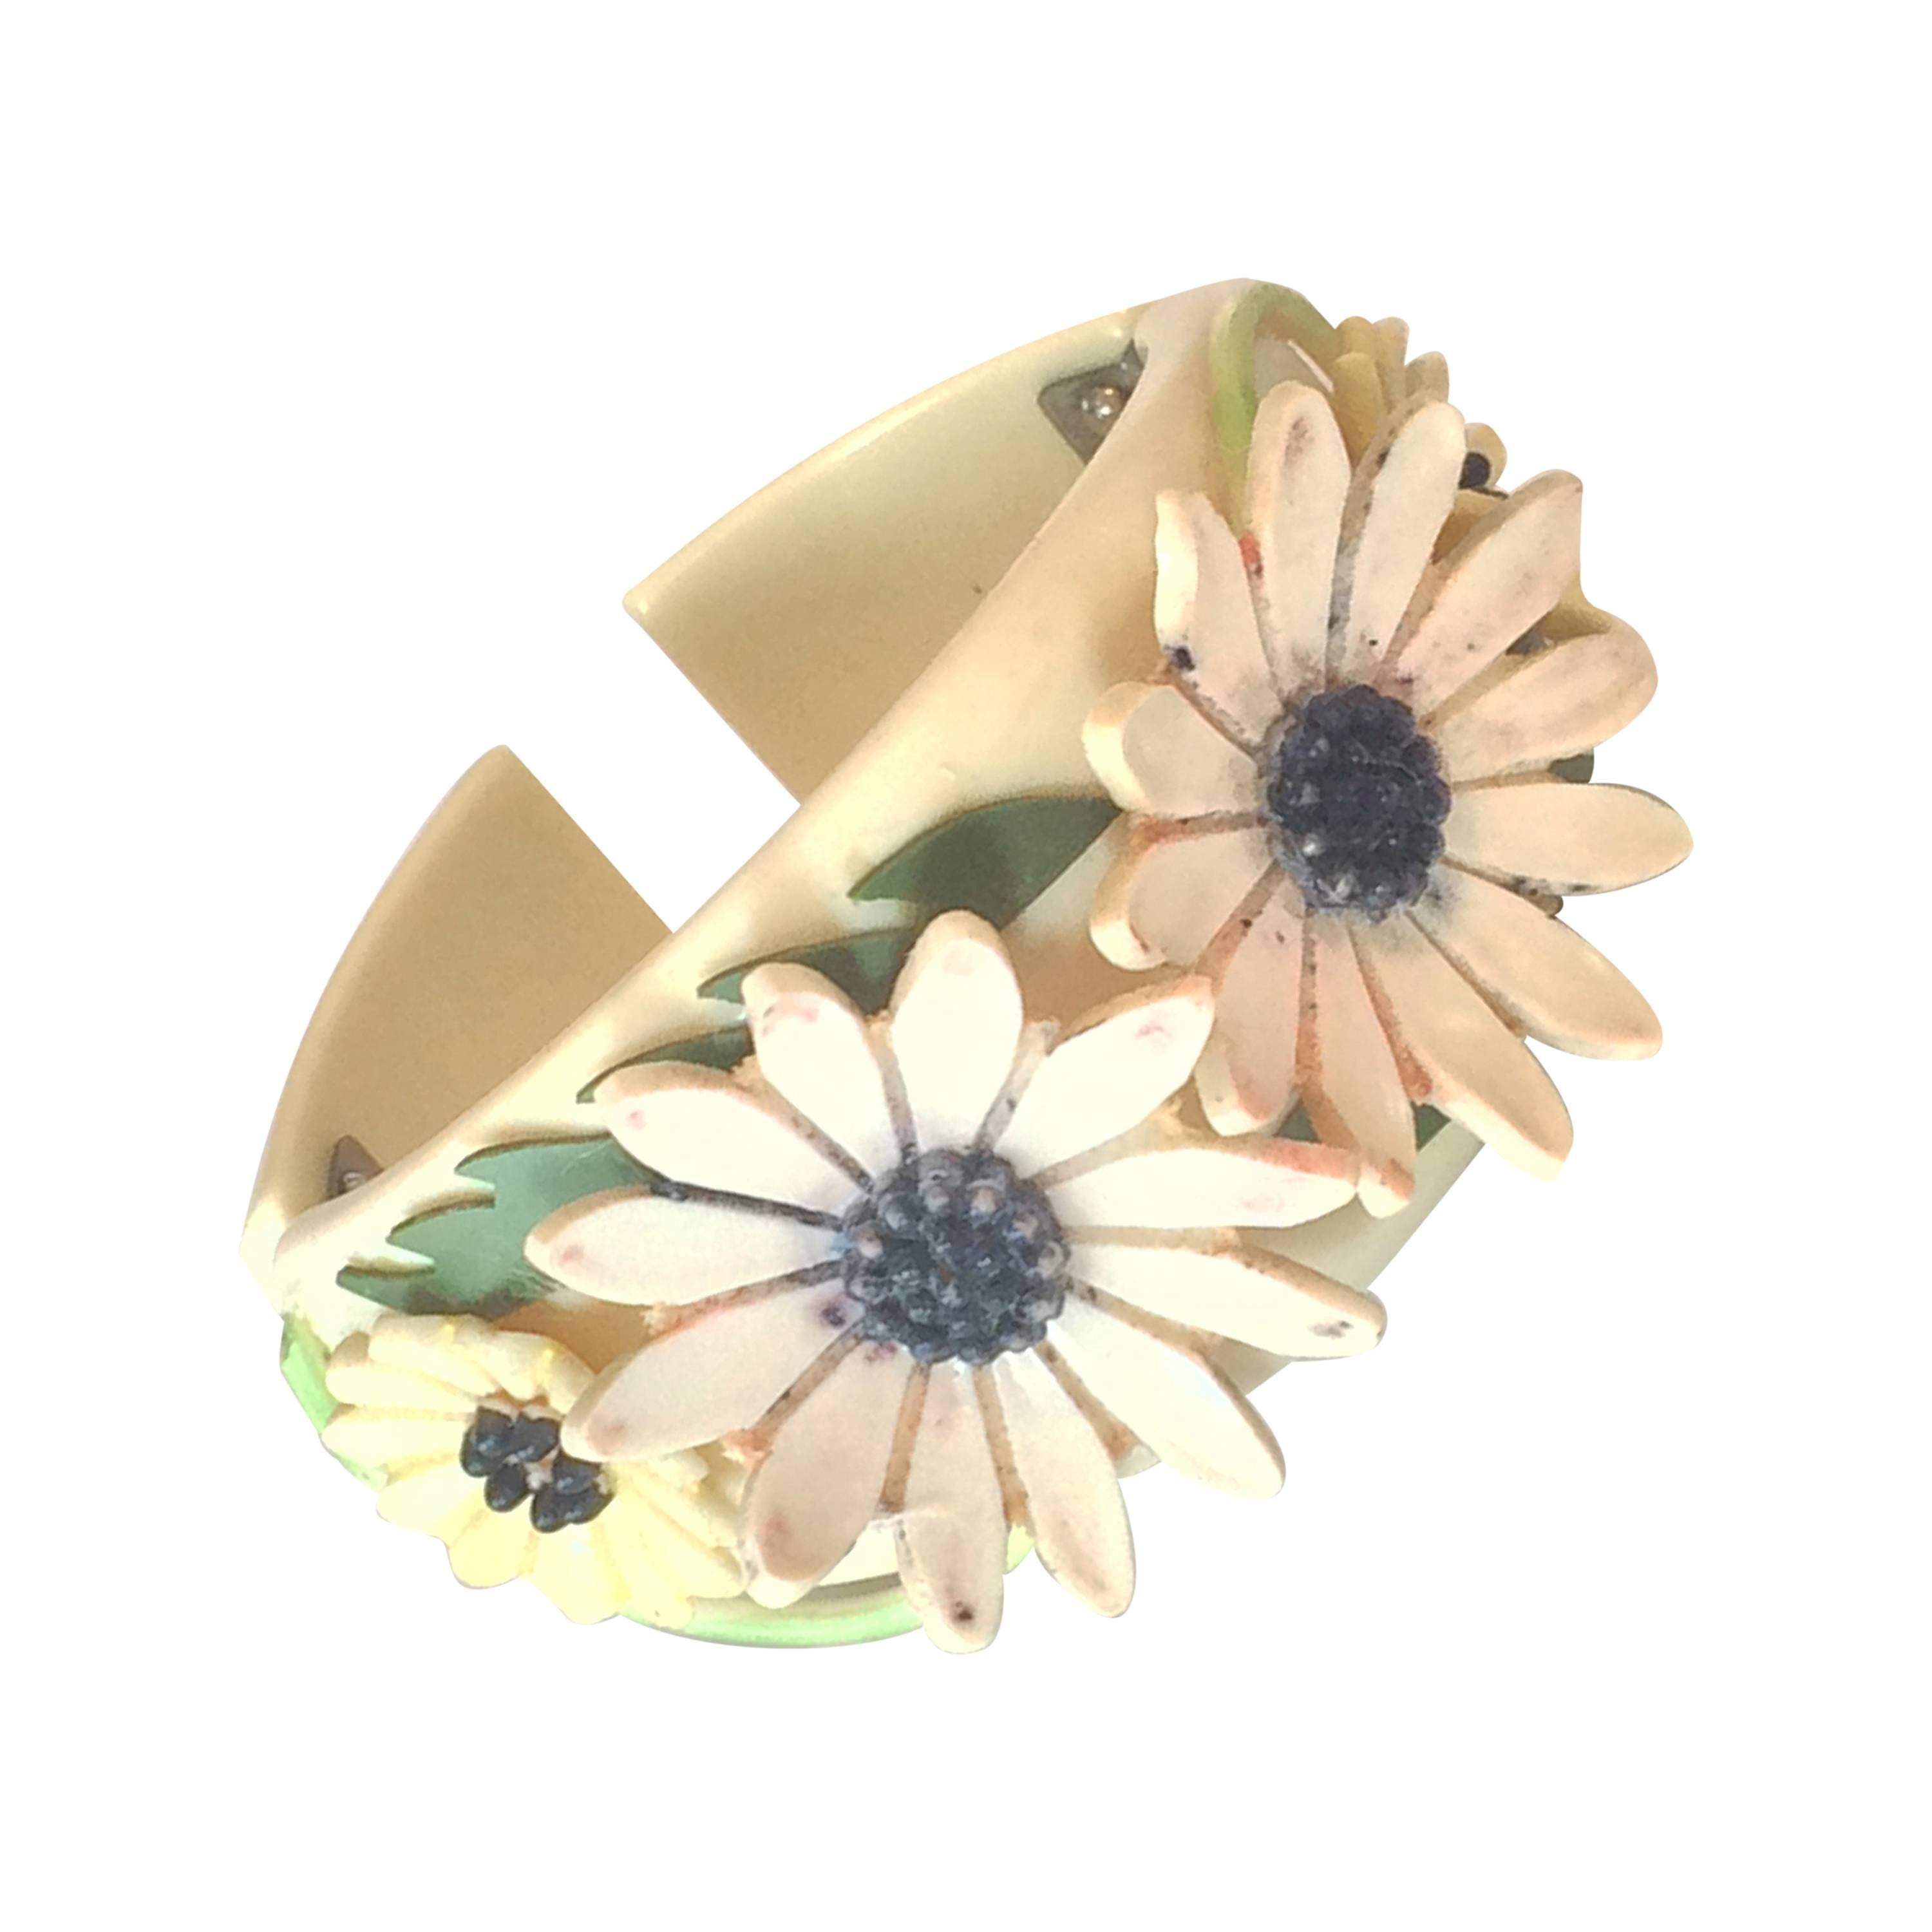 Rare Art Deco bakelite double hinged Daisy flower clamper bracelet